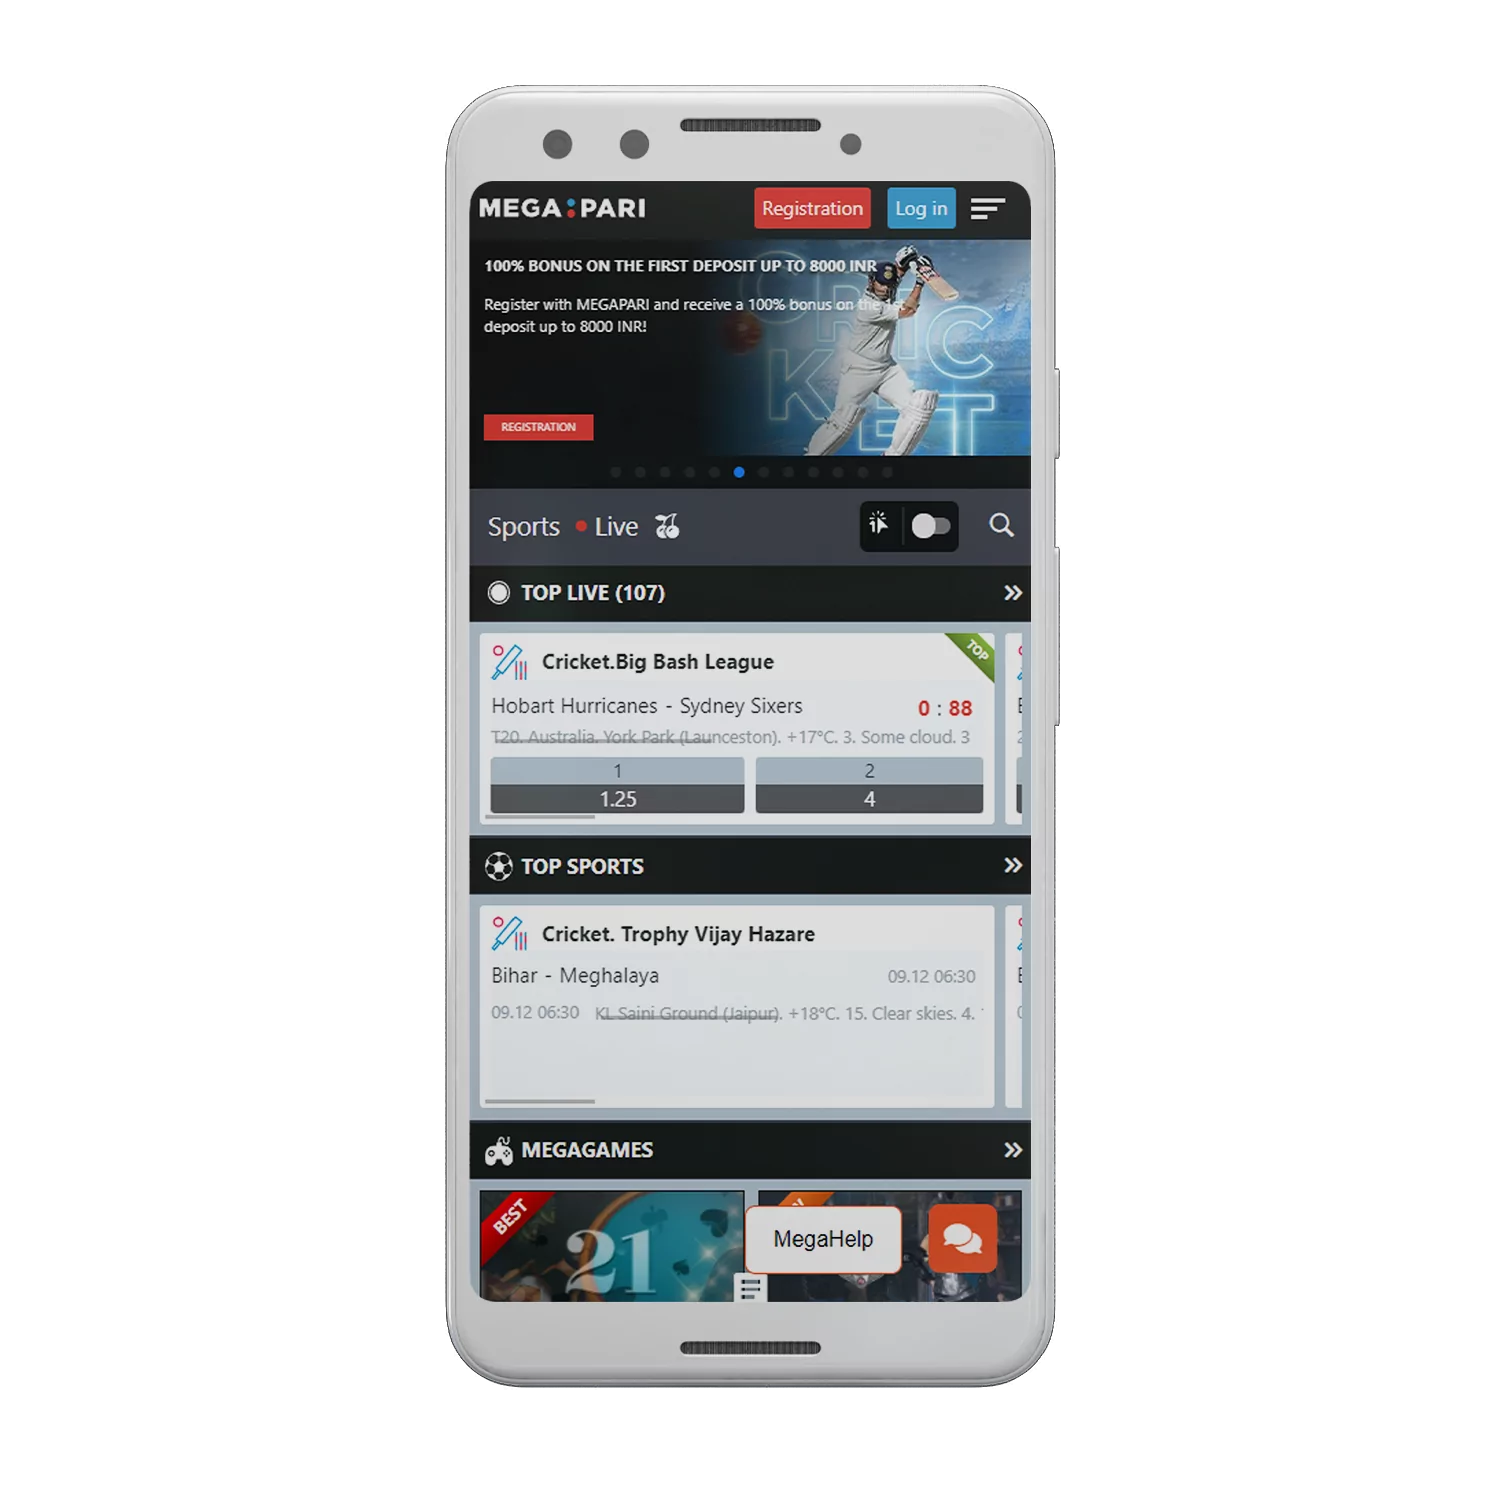 आप एंड्रॉइड और आईओएस पर Megapari ऐप को मुफ्त में डाउनलोड कर सकते हैं।